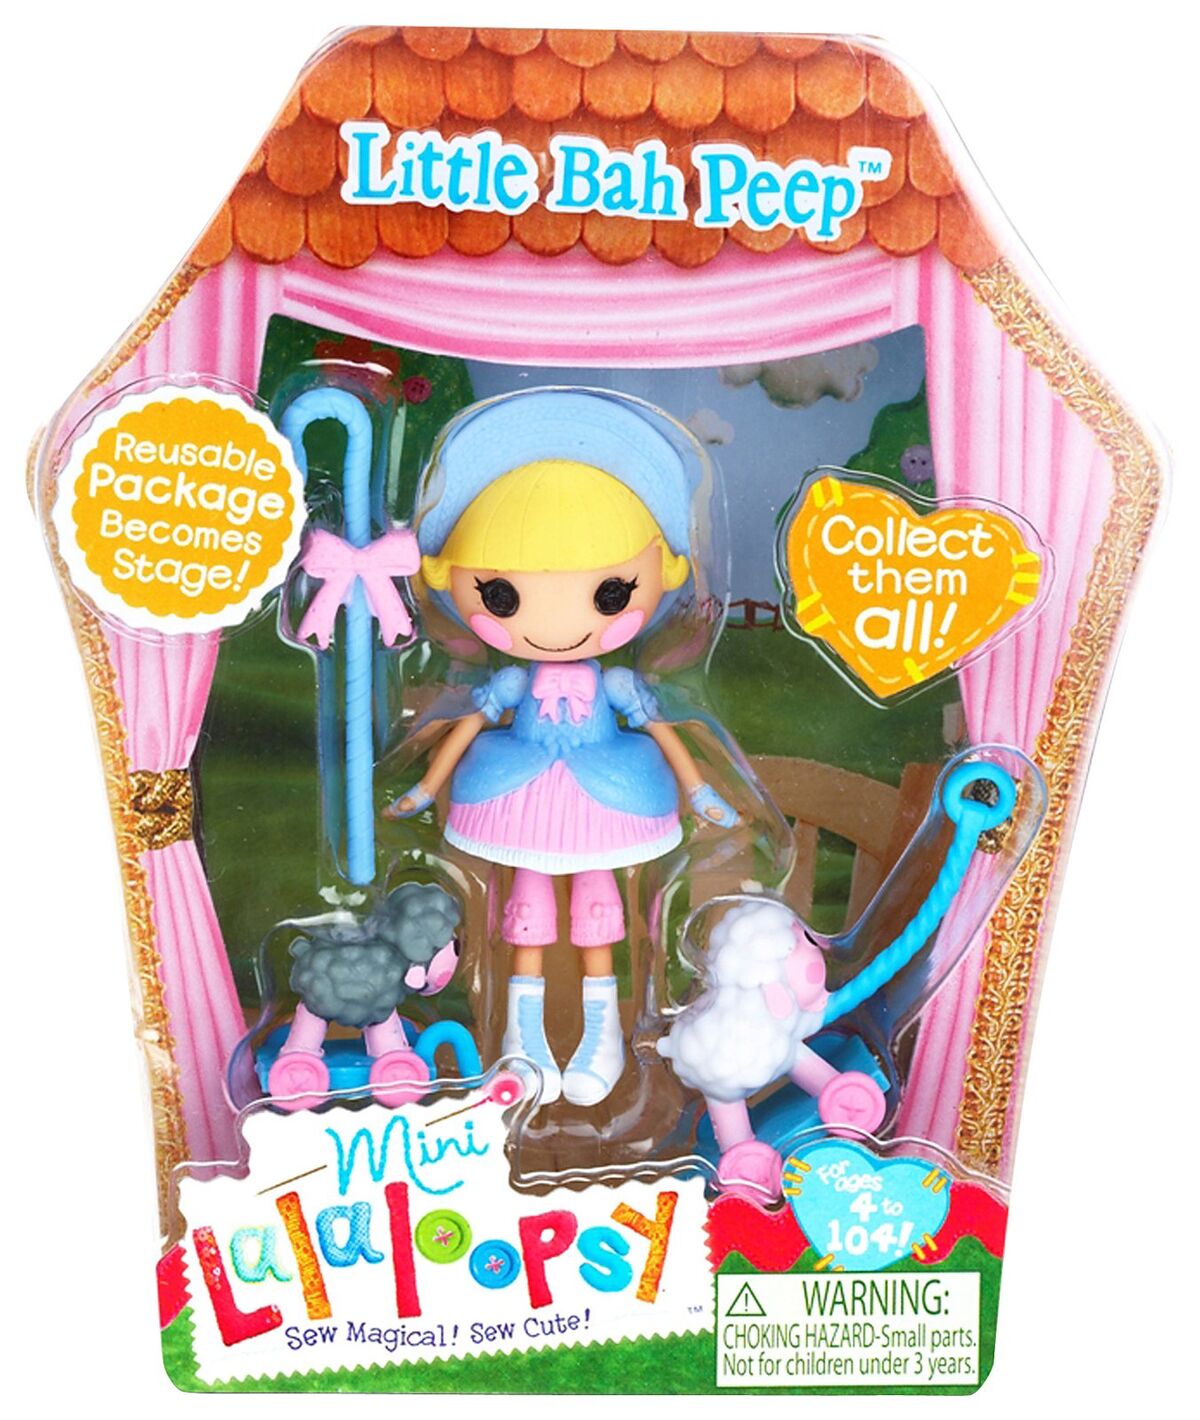 Little Bah Peep/merchandise | Lalaloopsy Land Wiki | Fandom